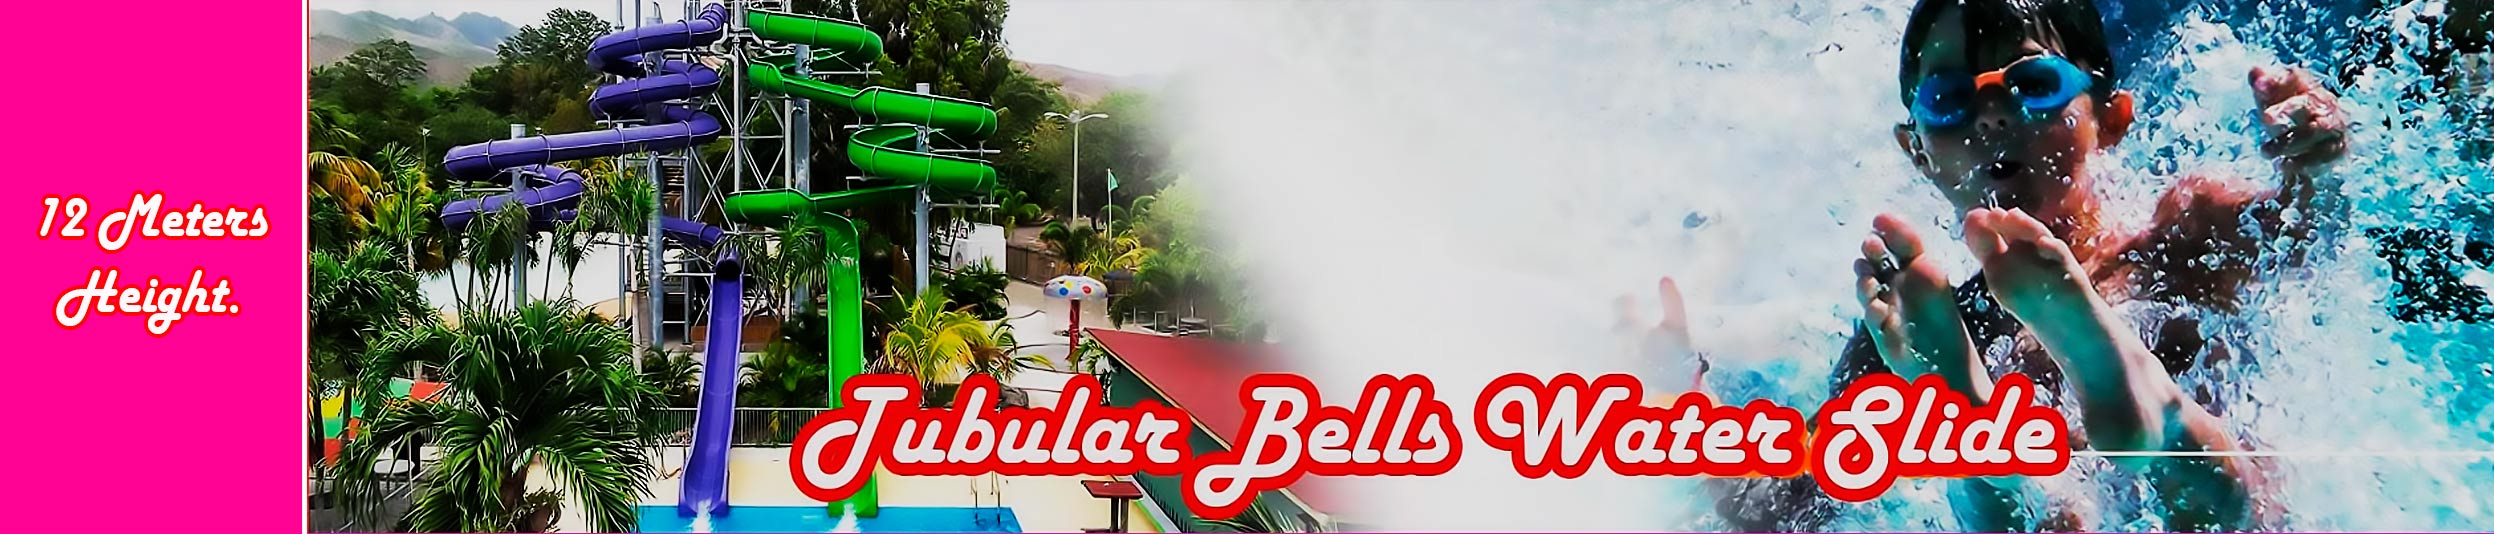 tubular bells -construcción de parques acuáticos y toboganes de agua